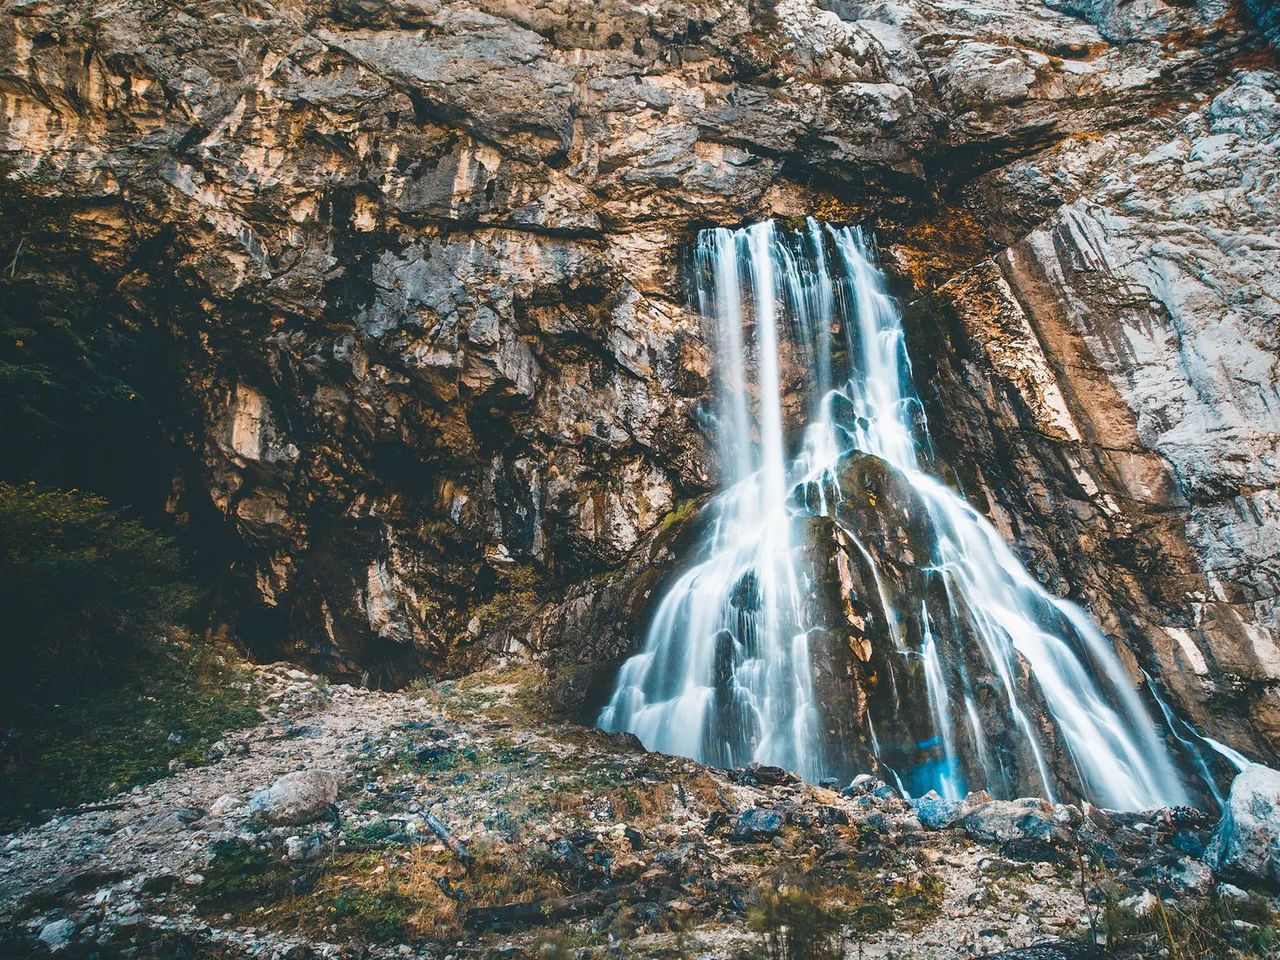 Джип-тур "Красавица Рица и Гегский водопад" | Цена 2250₽, отзывы, описание экскурсии